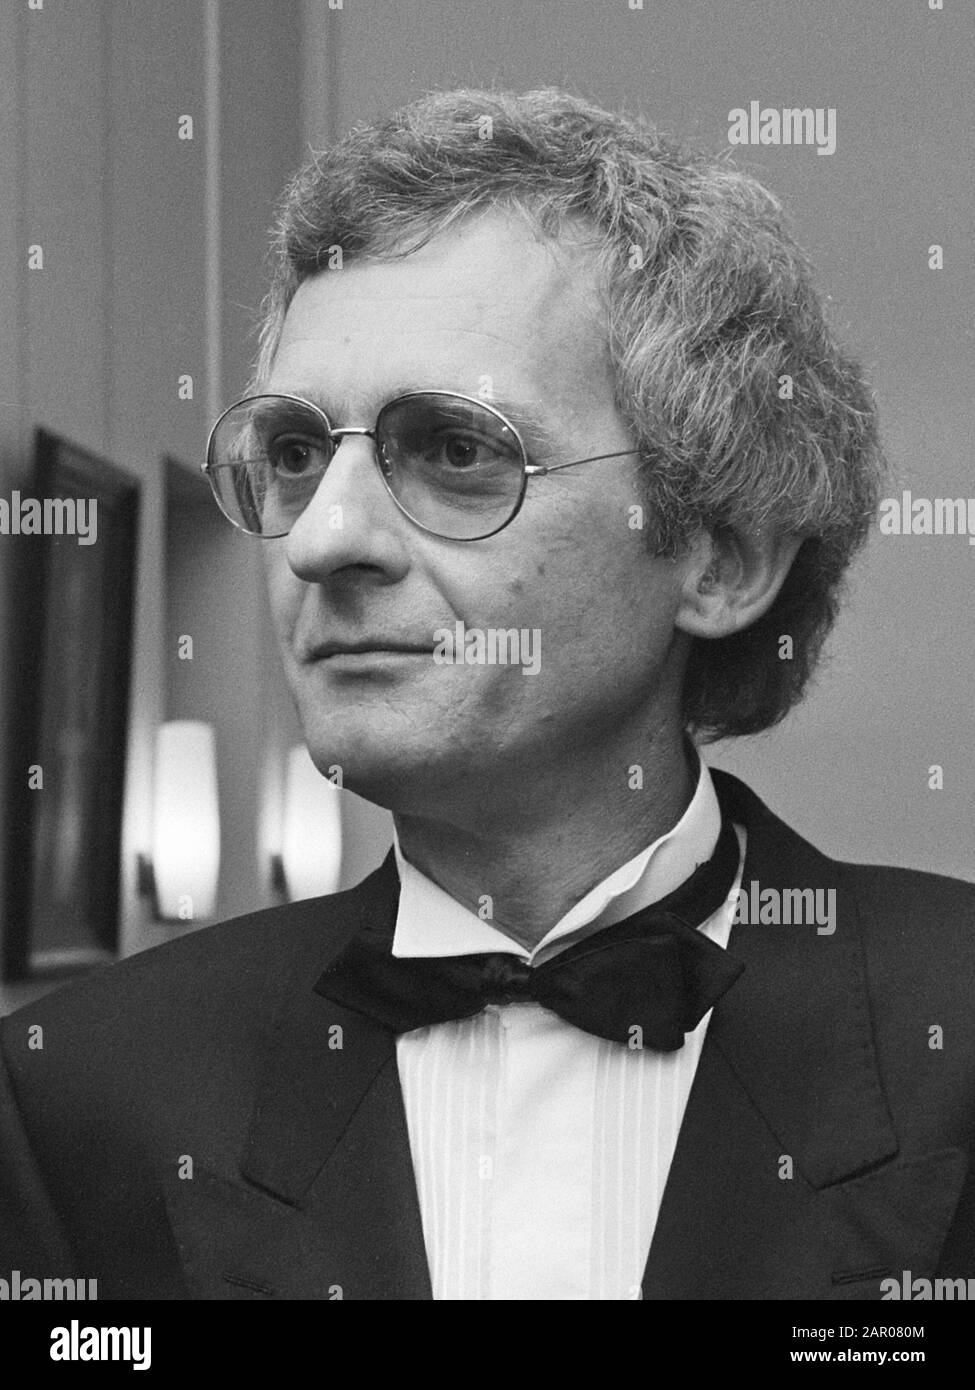 Promotion m.. H. P. Bakker Schut op Rote Armee Fraktion à Utrecht 15 oktober 1986; ' Banque D'Images